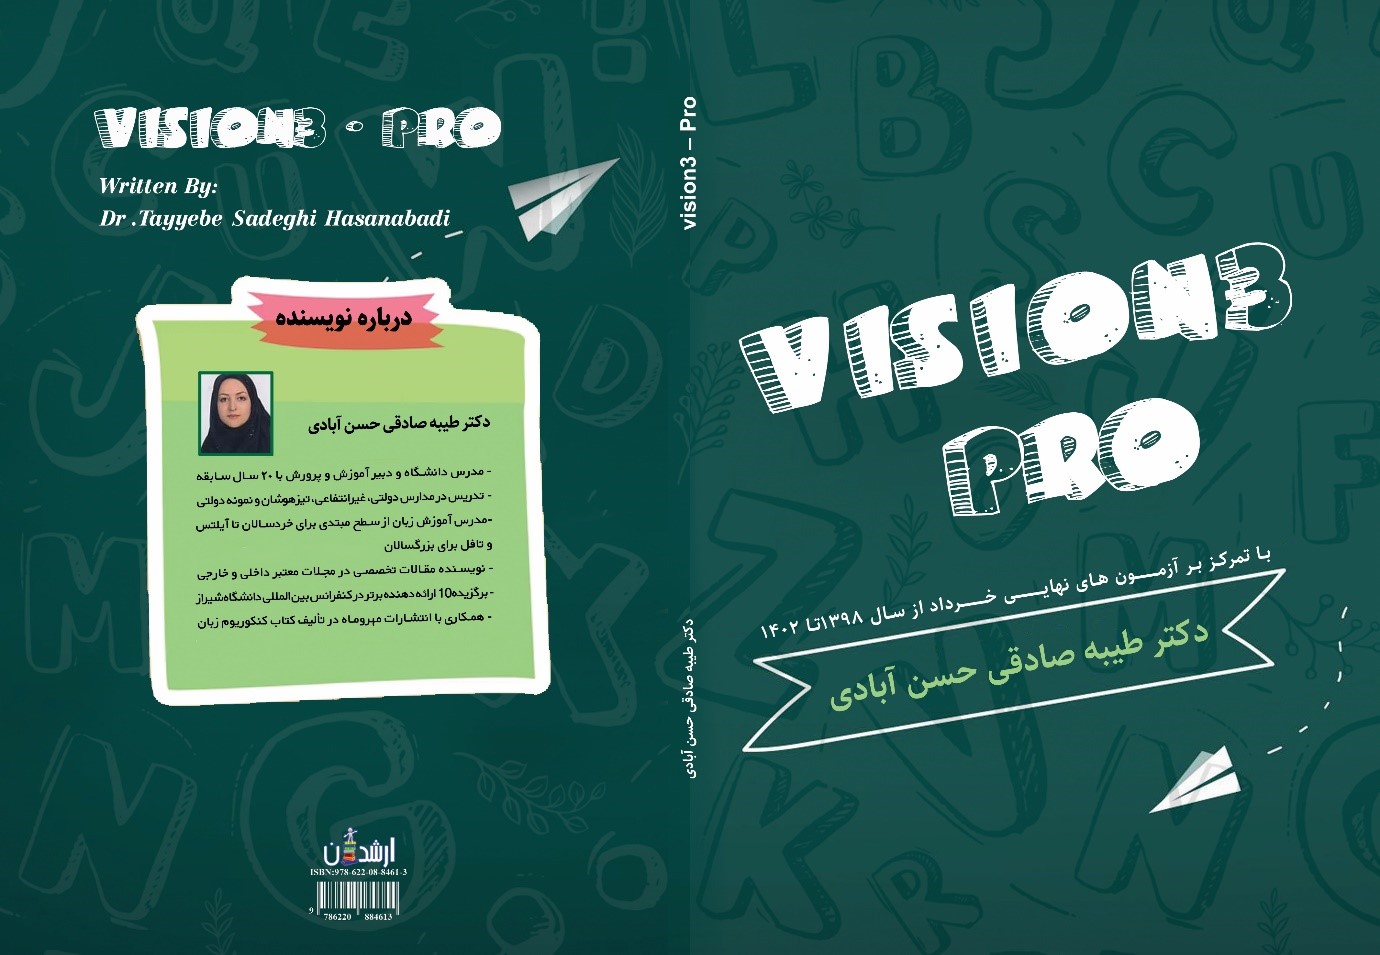 Vision3-Pro